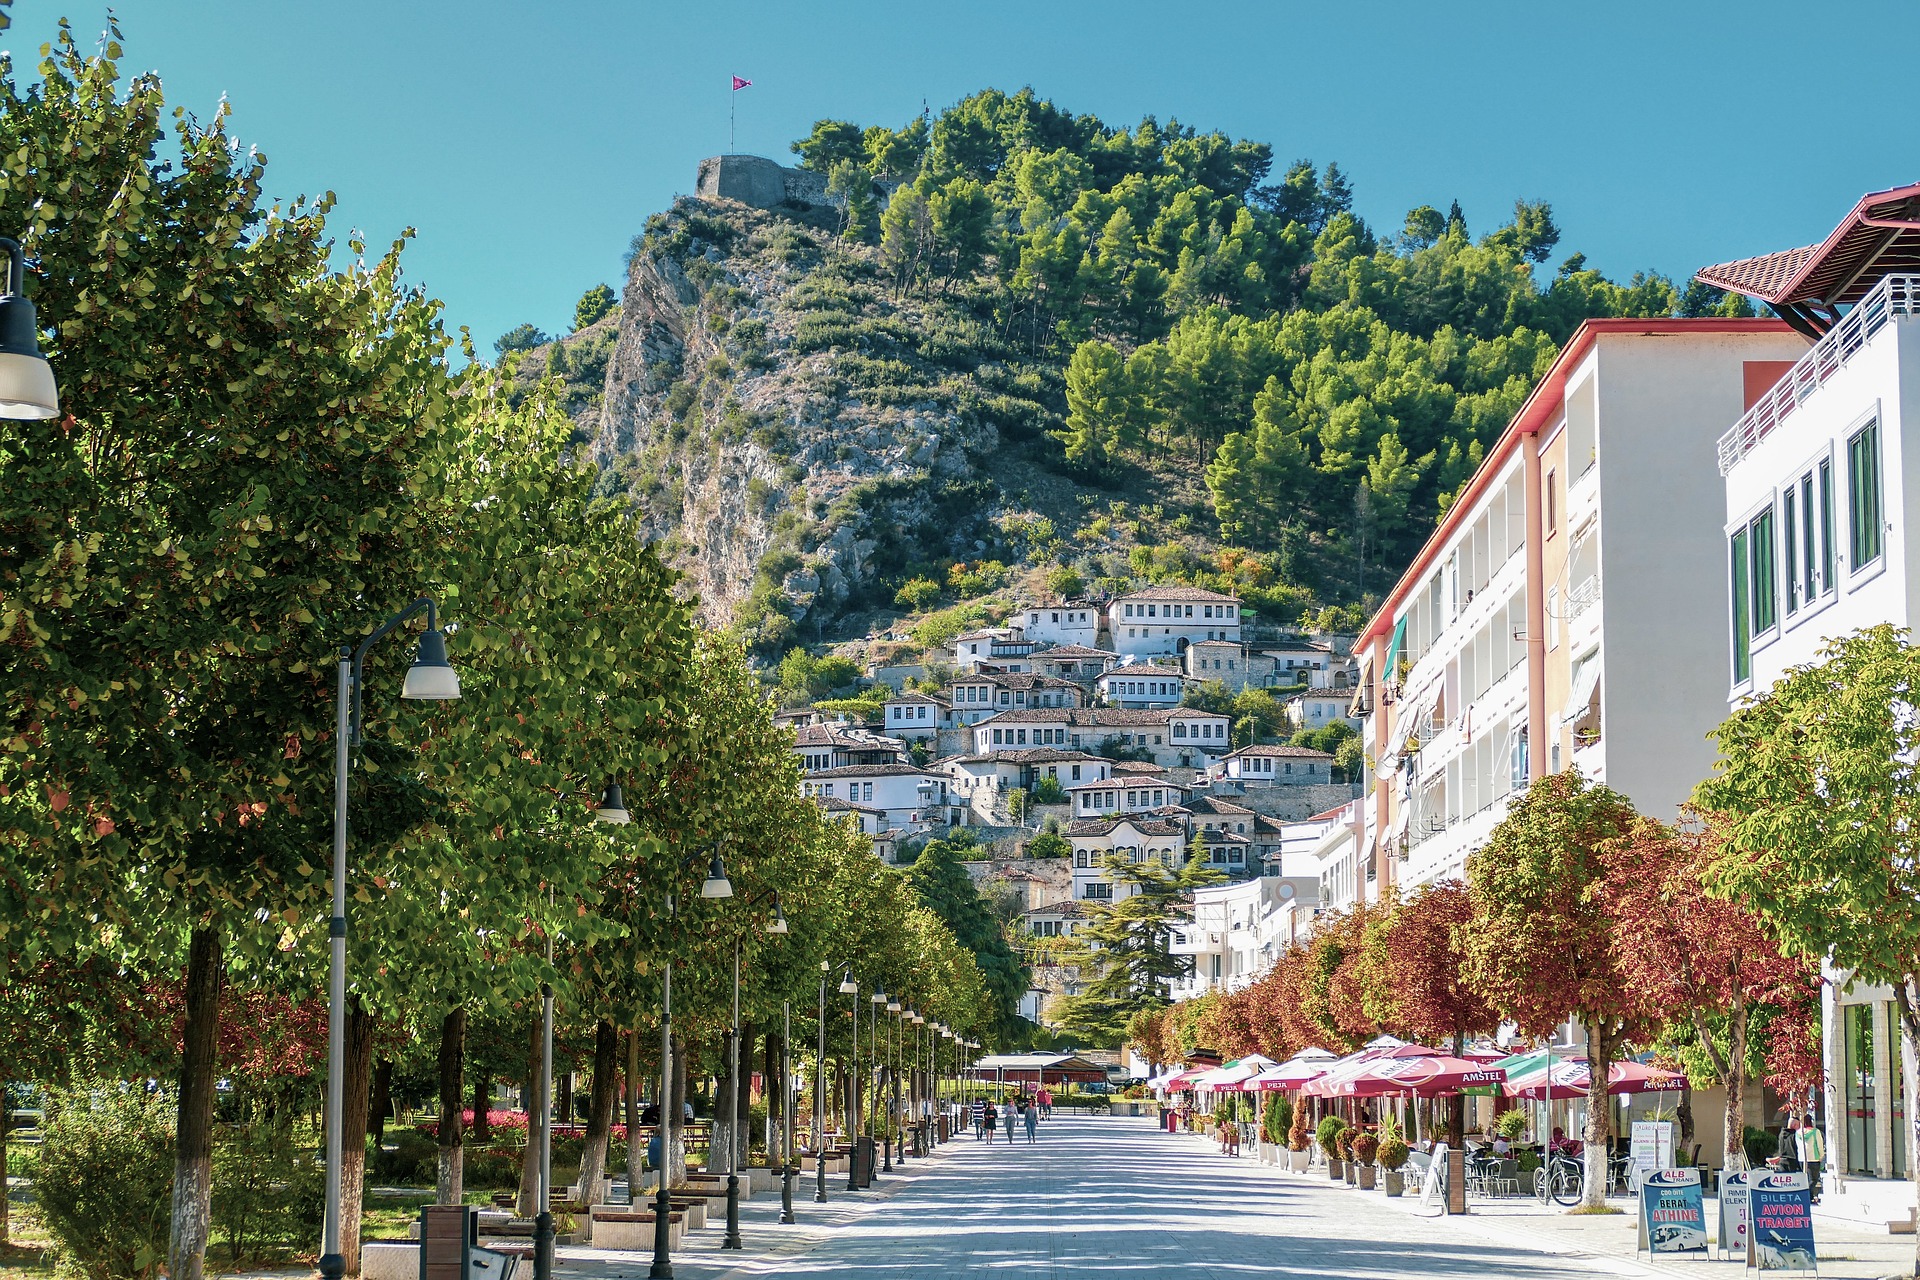 bijna lege straat met aan de linkerkant een bomenrij en aan de rechterkant witte gebouwen en restaurant in de stad Berat in Albanië. Aan het einde van de straat liggen vele witte huisjes tegen een heuvel aan.